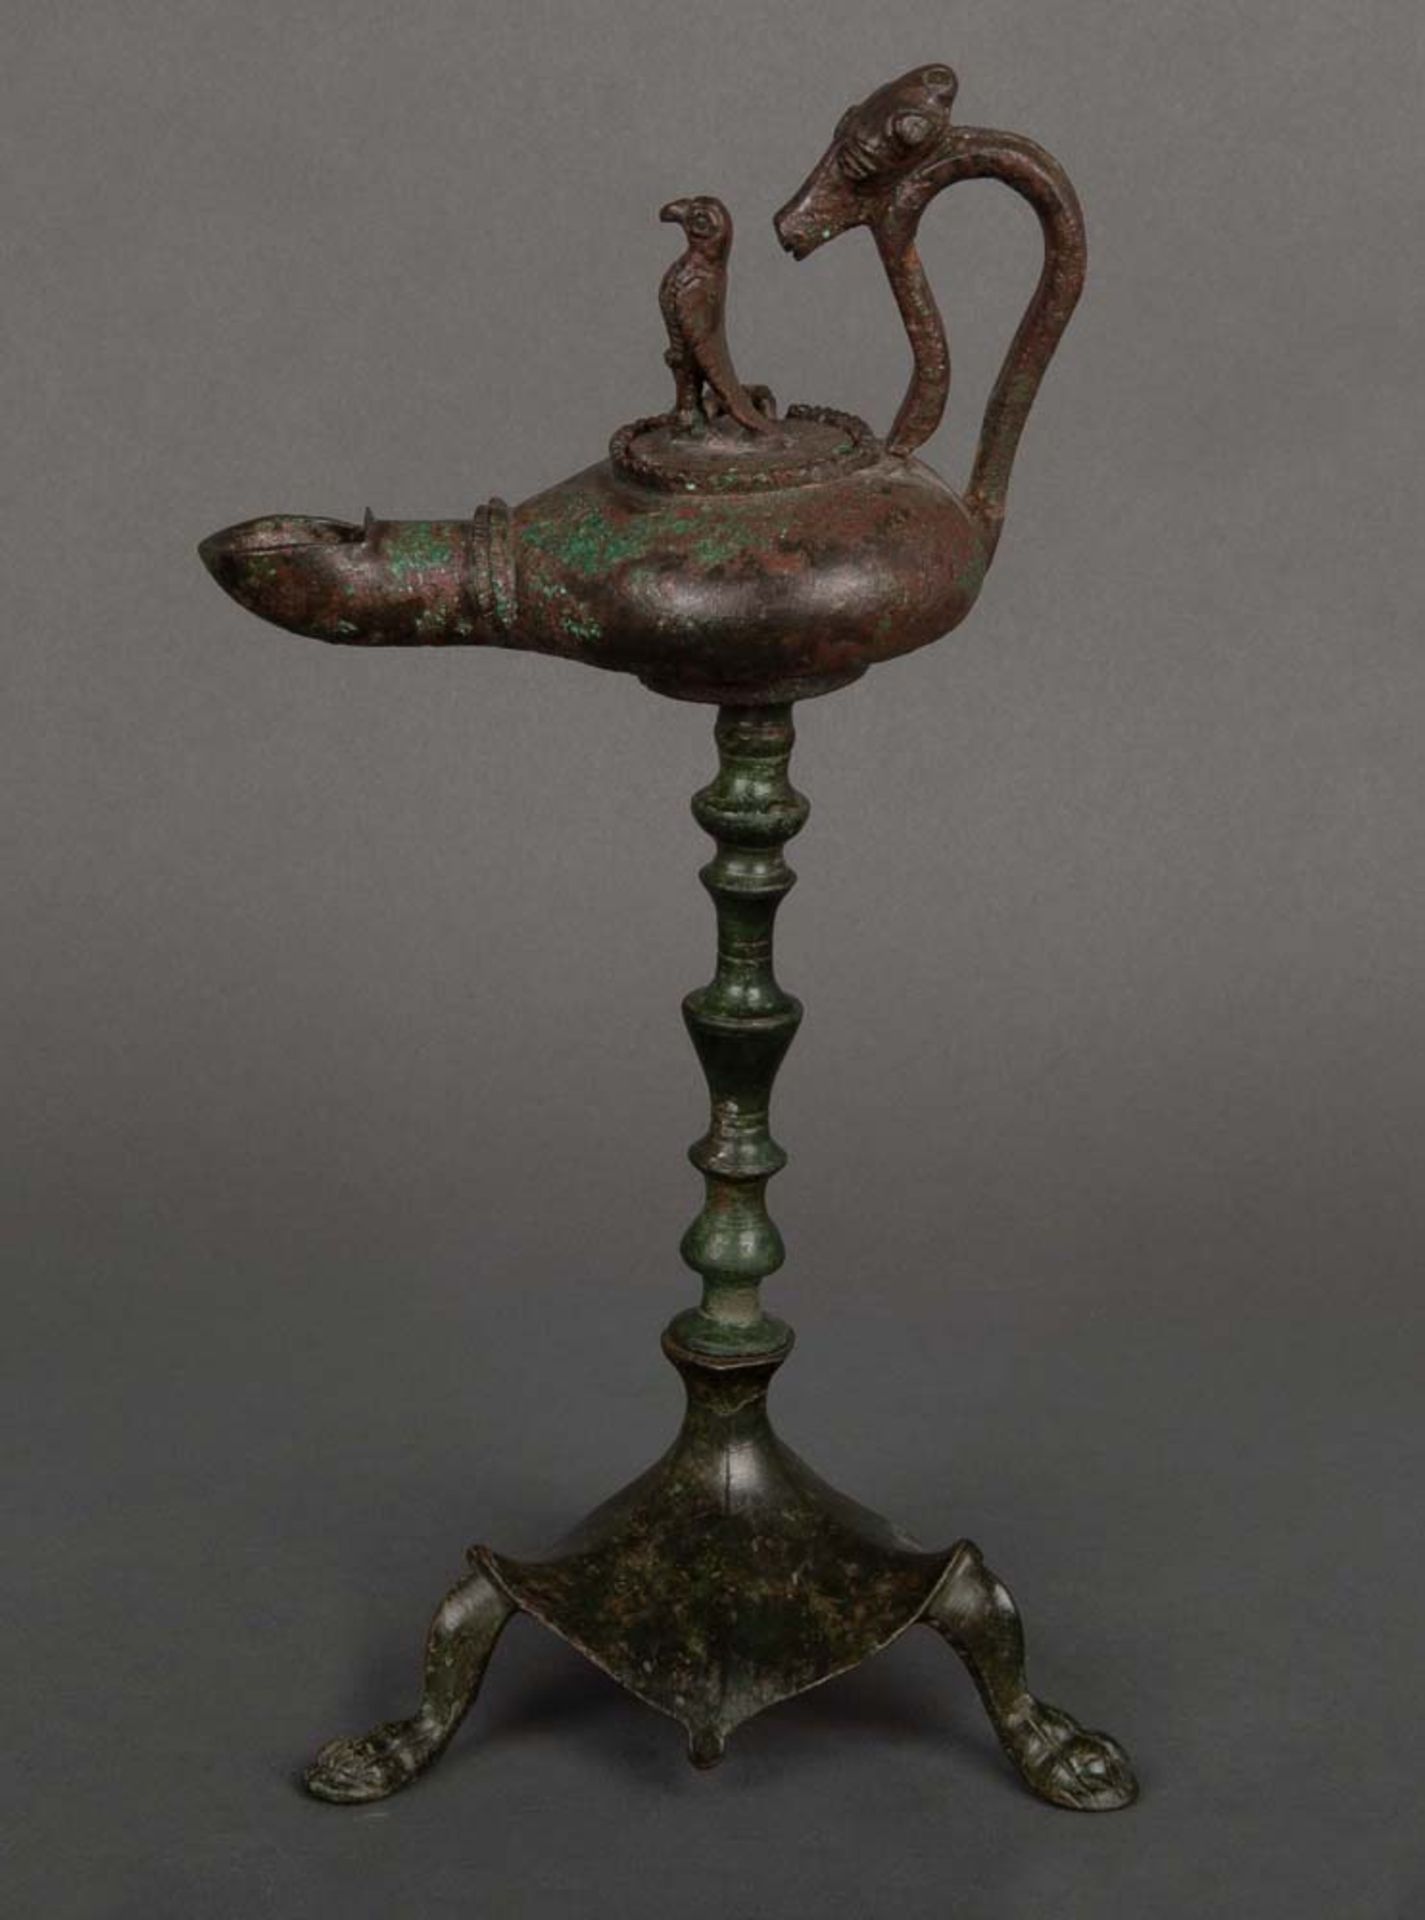 Öllampe mit Vogelknauf auf Ständer, abnehmbar. Lt. Rechnung Römisch, 2./3. Jh. n. Chr. Bronze,